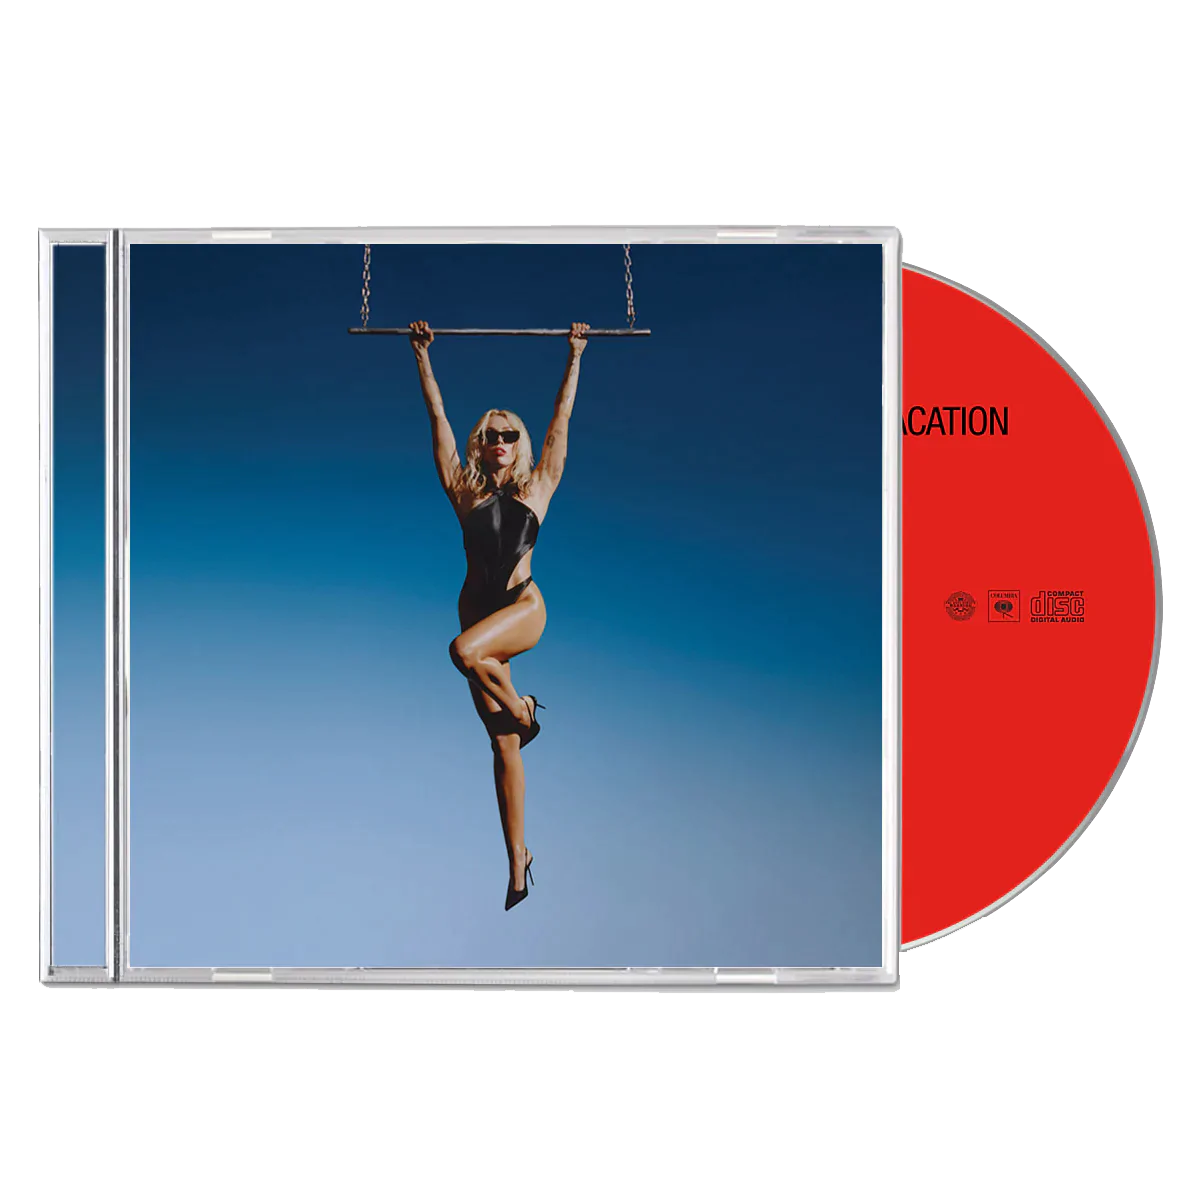 Miley Cyrus - Endless Summer Vacation: CD